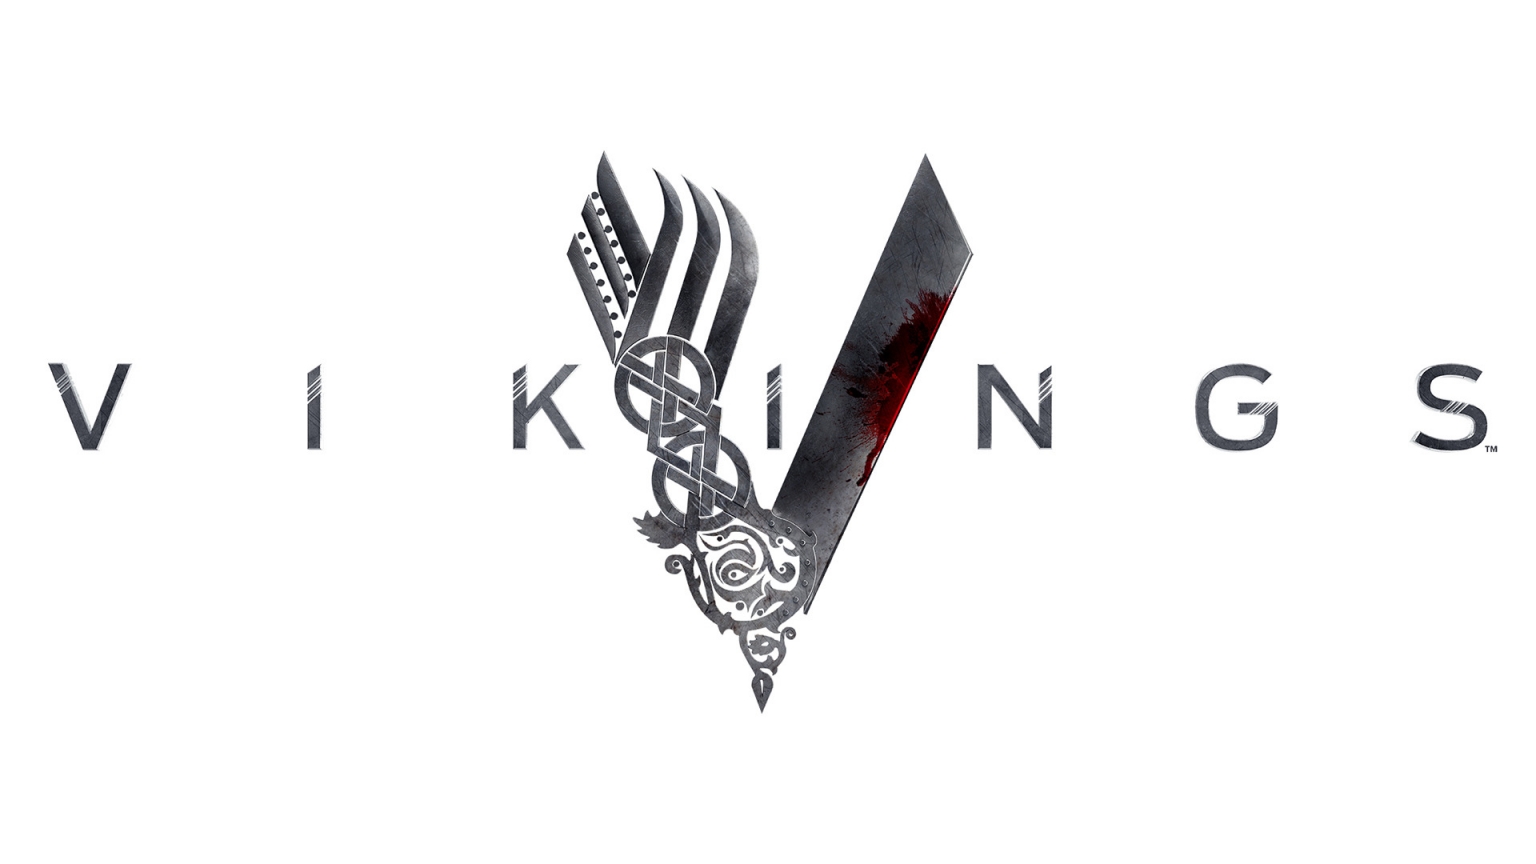 Vikings Logo for 1536 x 864 HDTV resolution